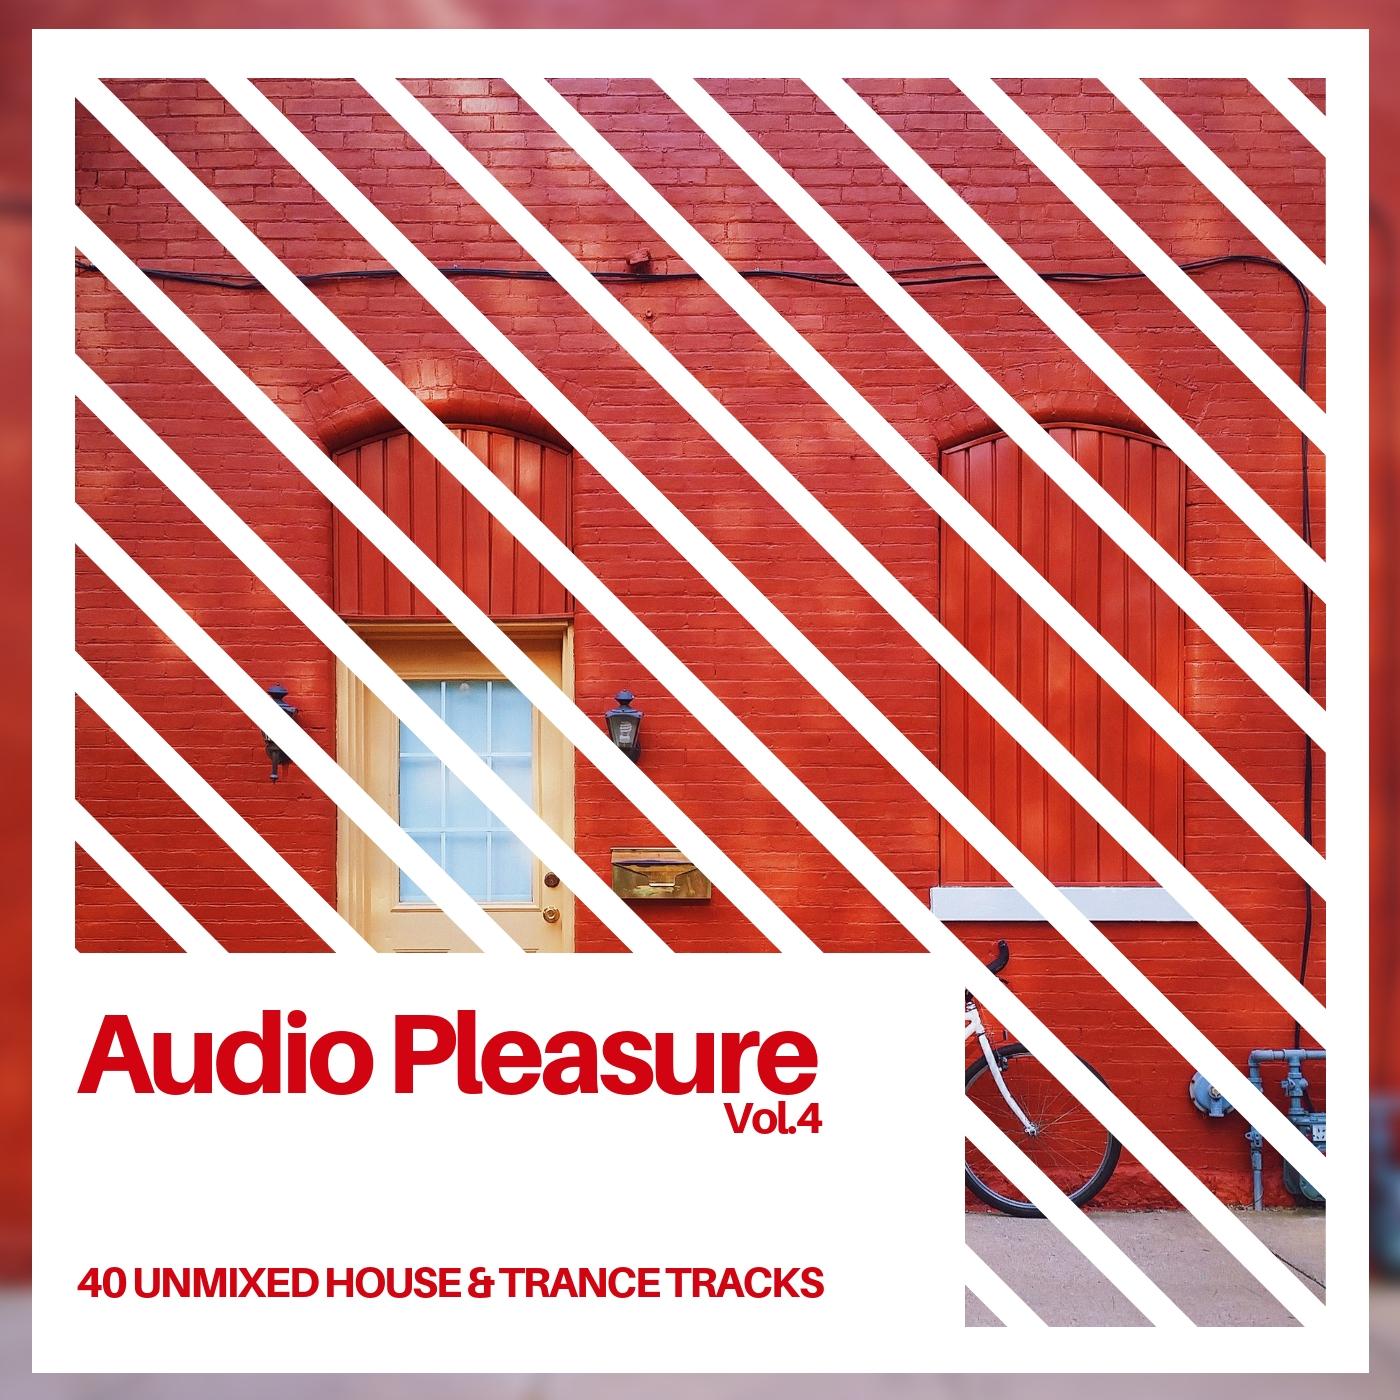 Audio Pleasure Vol.4